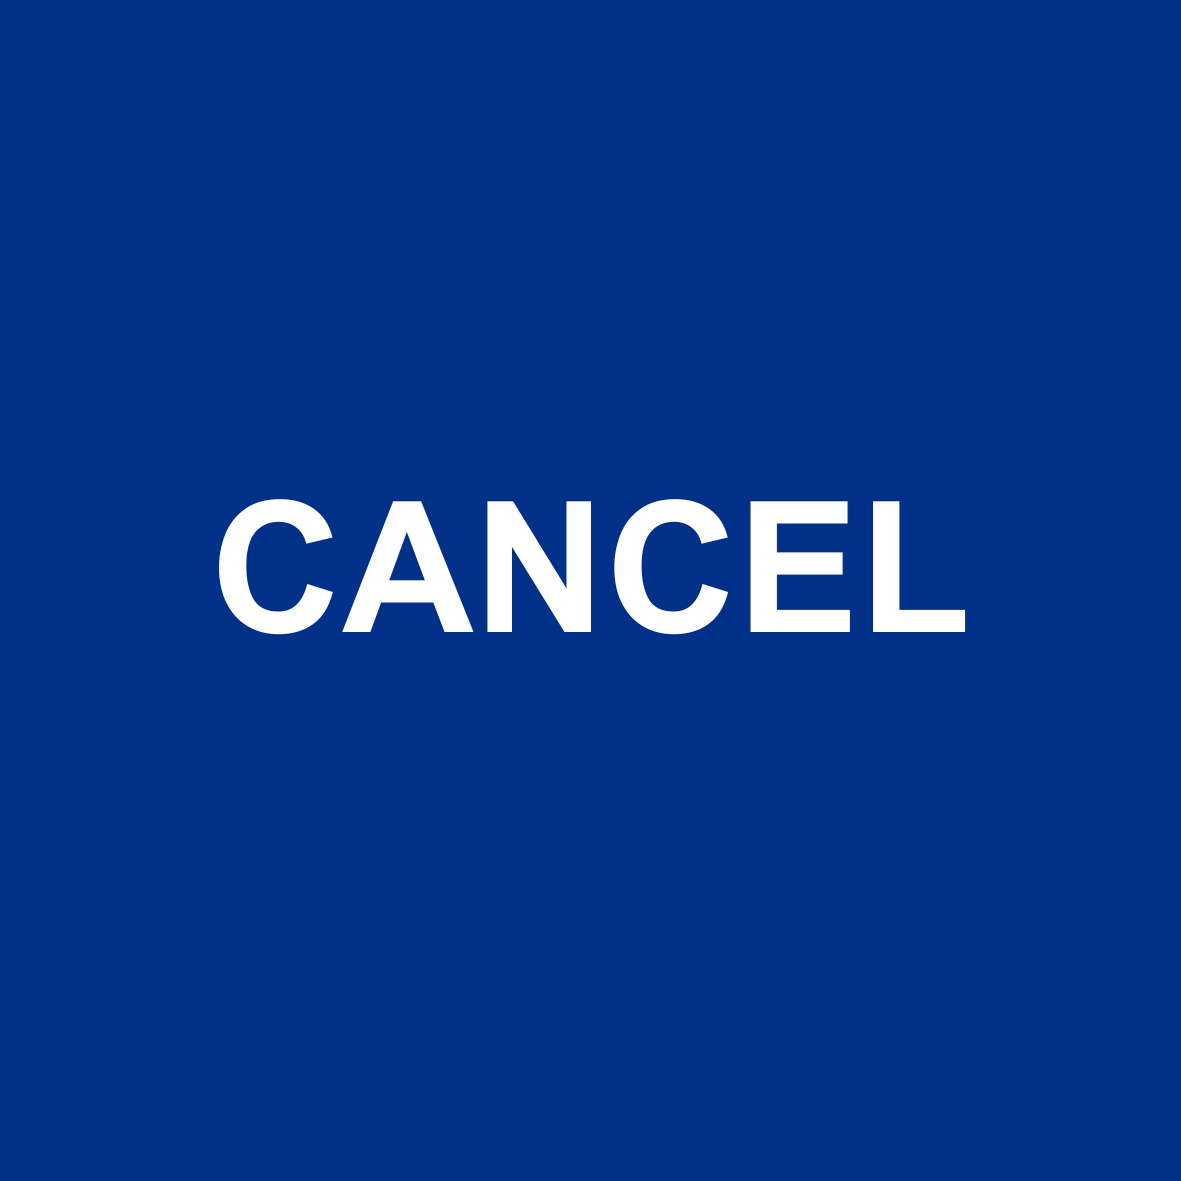 Word 'Cancel'